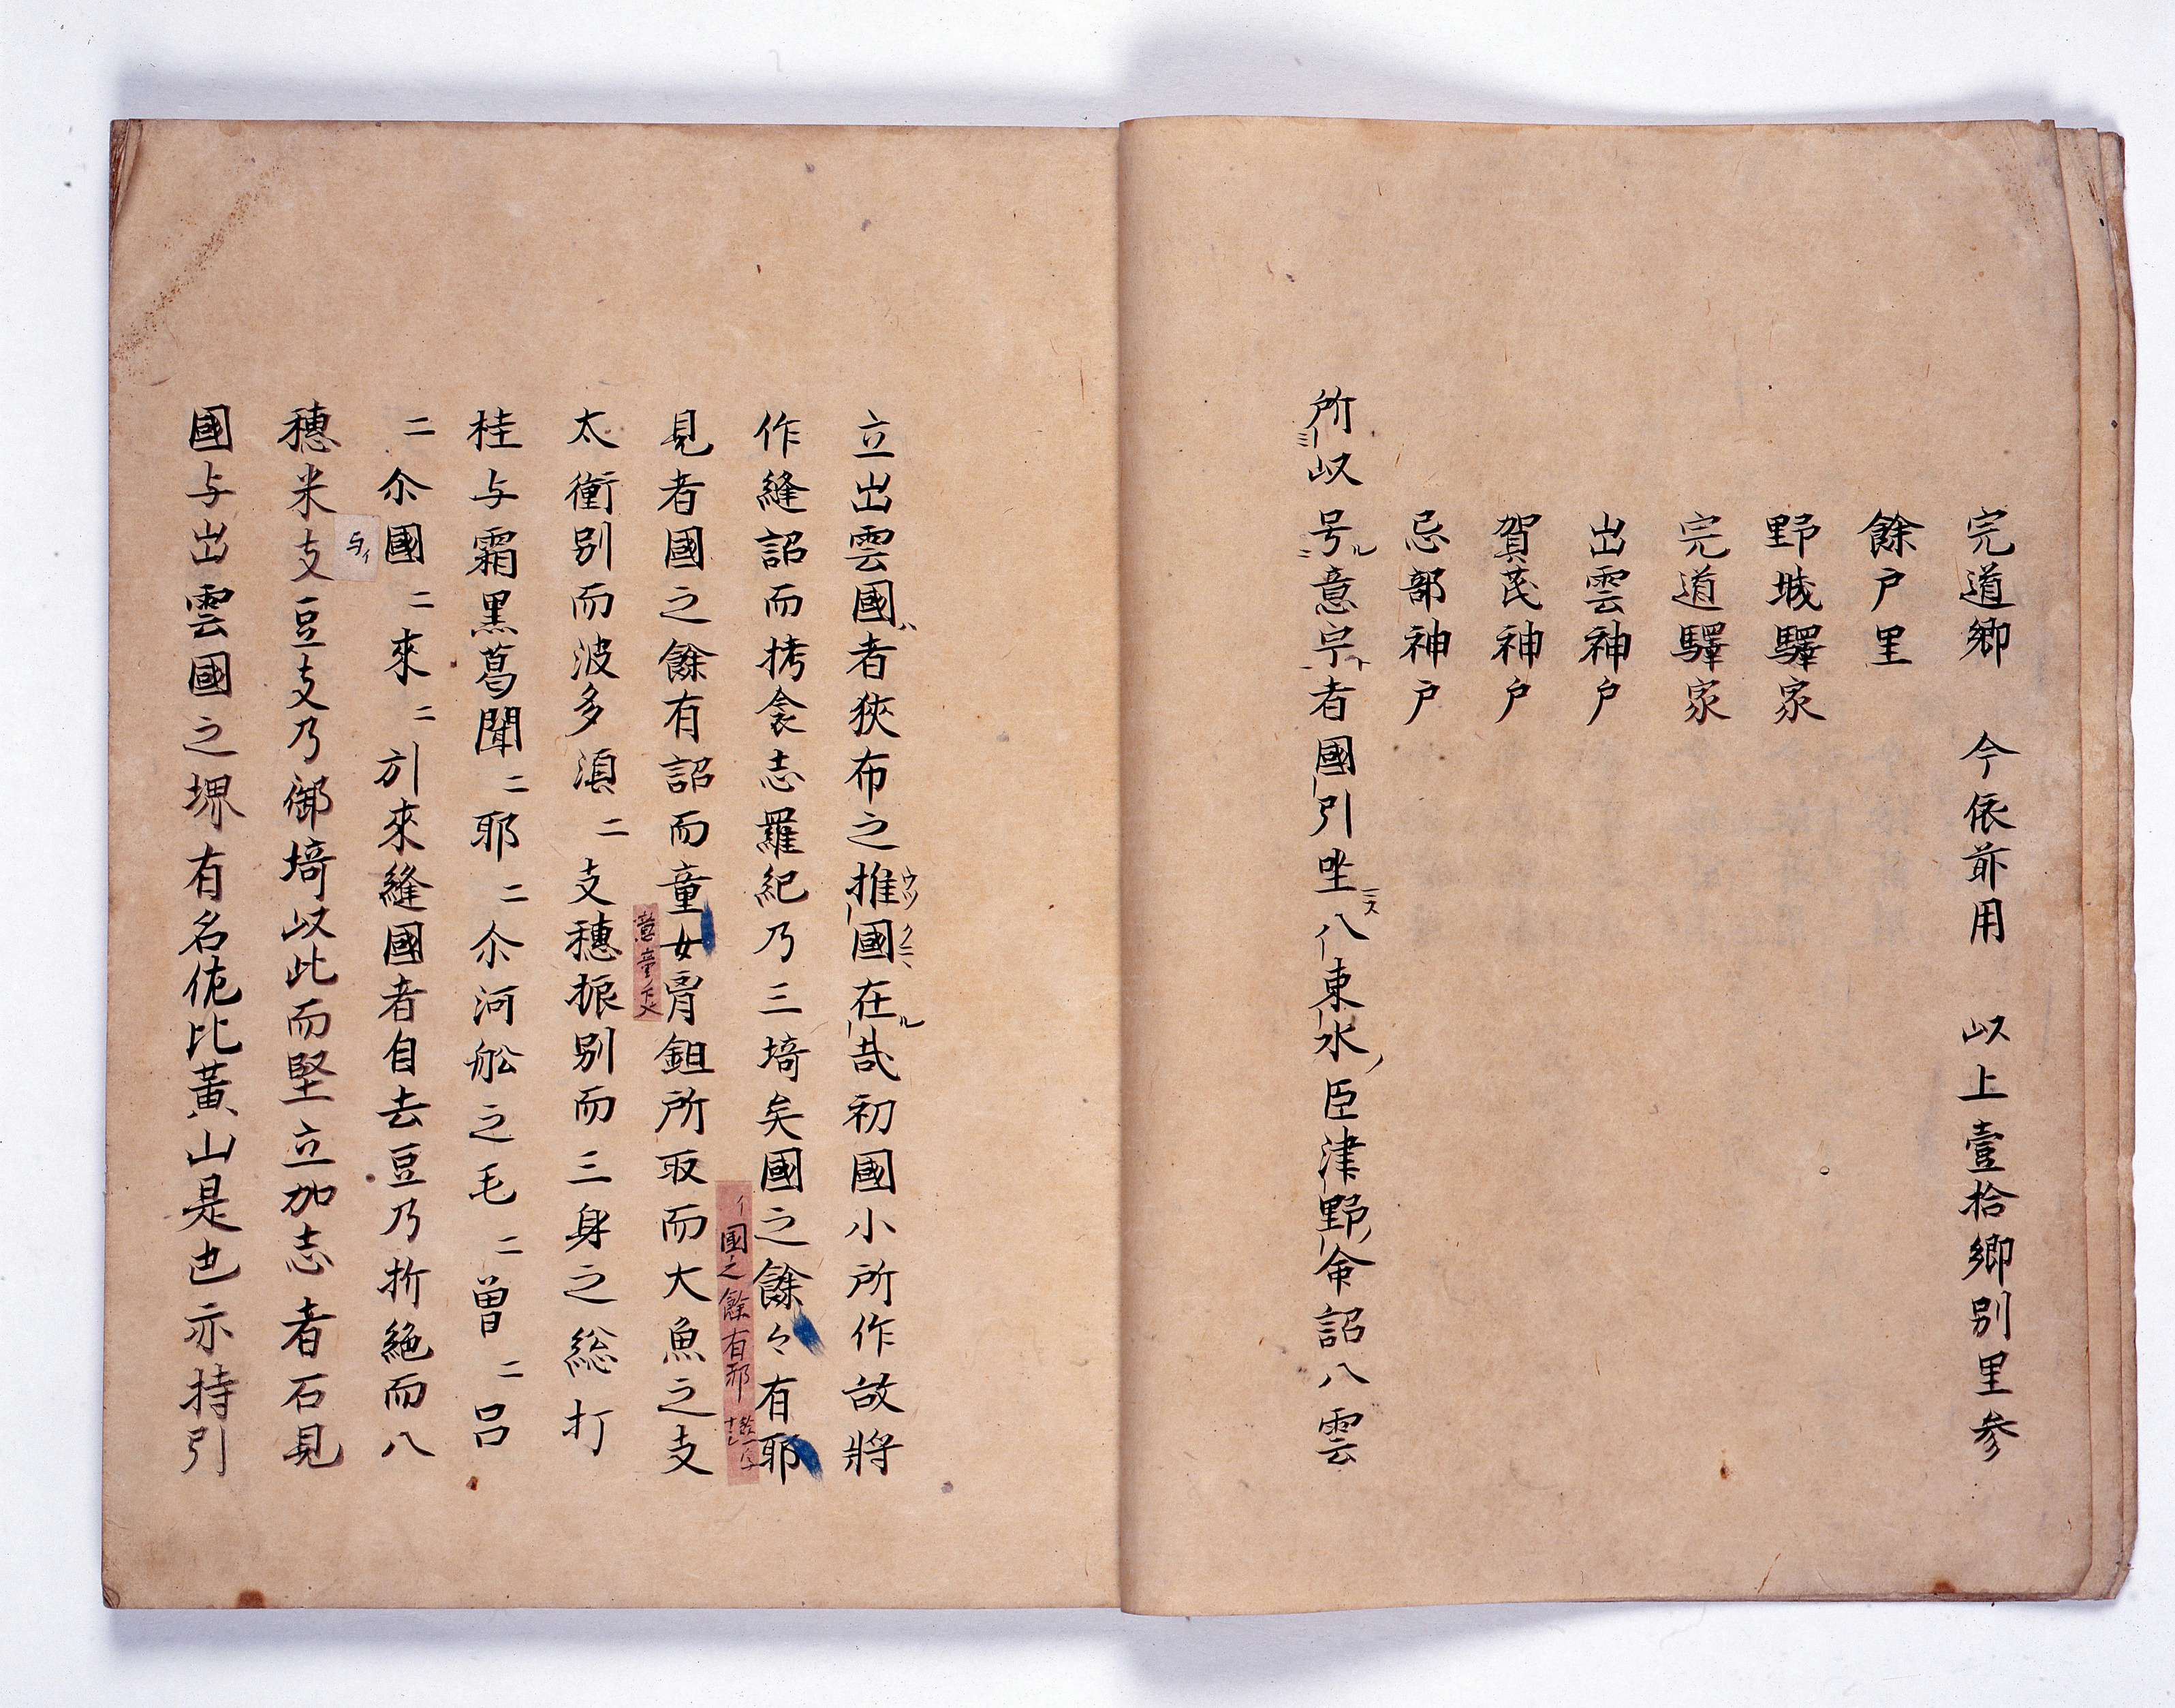 約1300年前につくられた『出雲国風土記』。島根県古代文化センター所蔵 